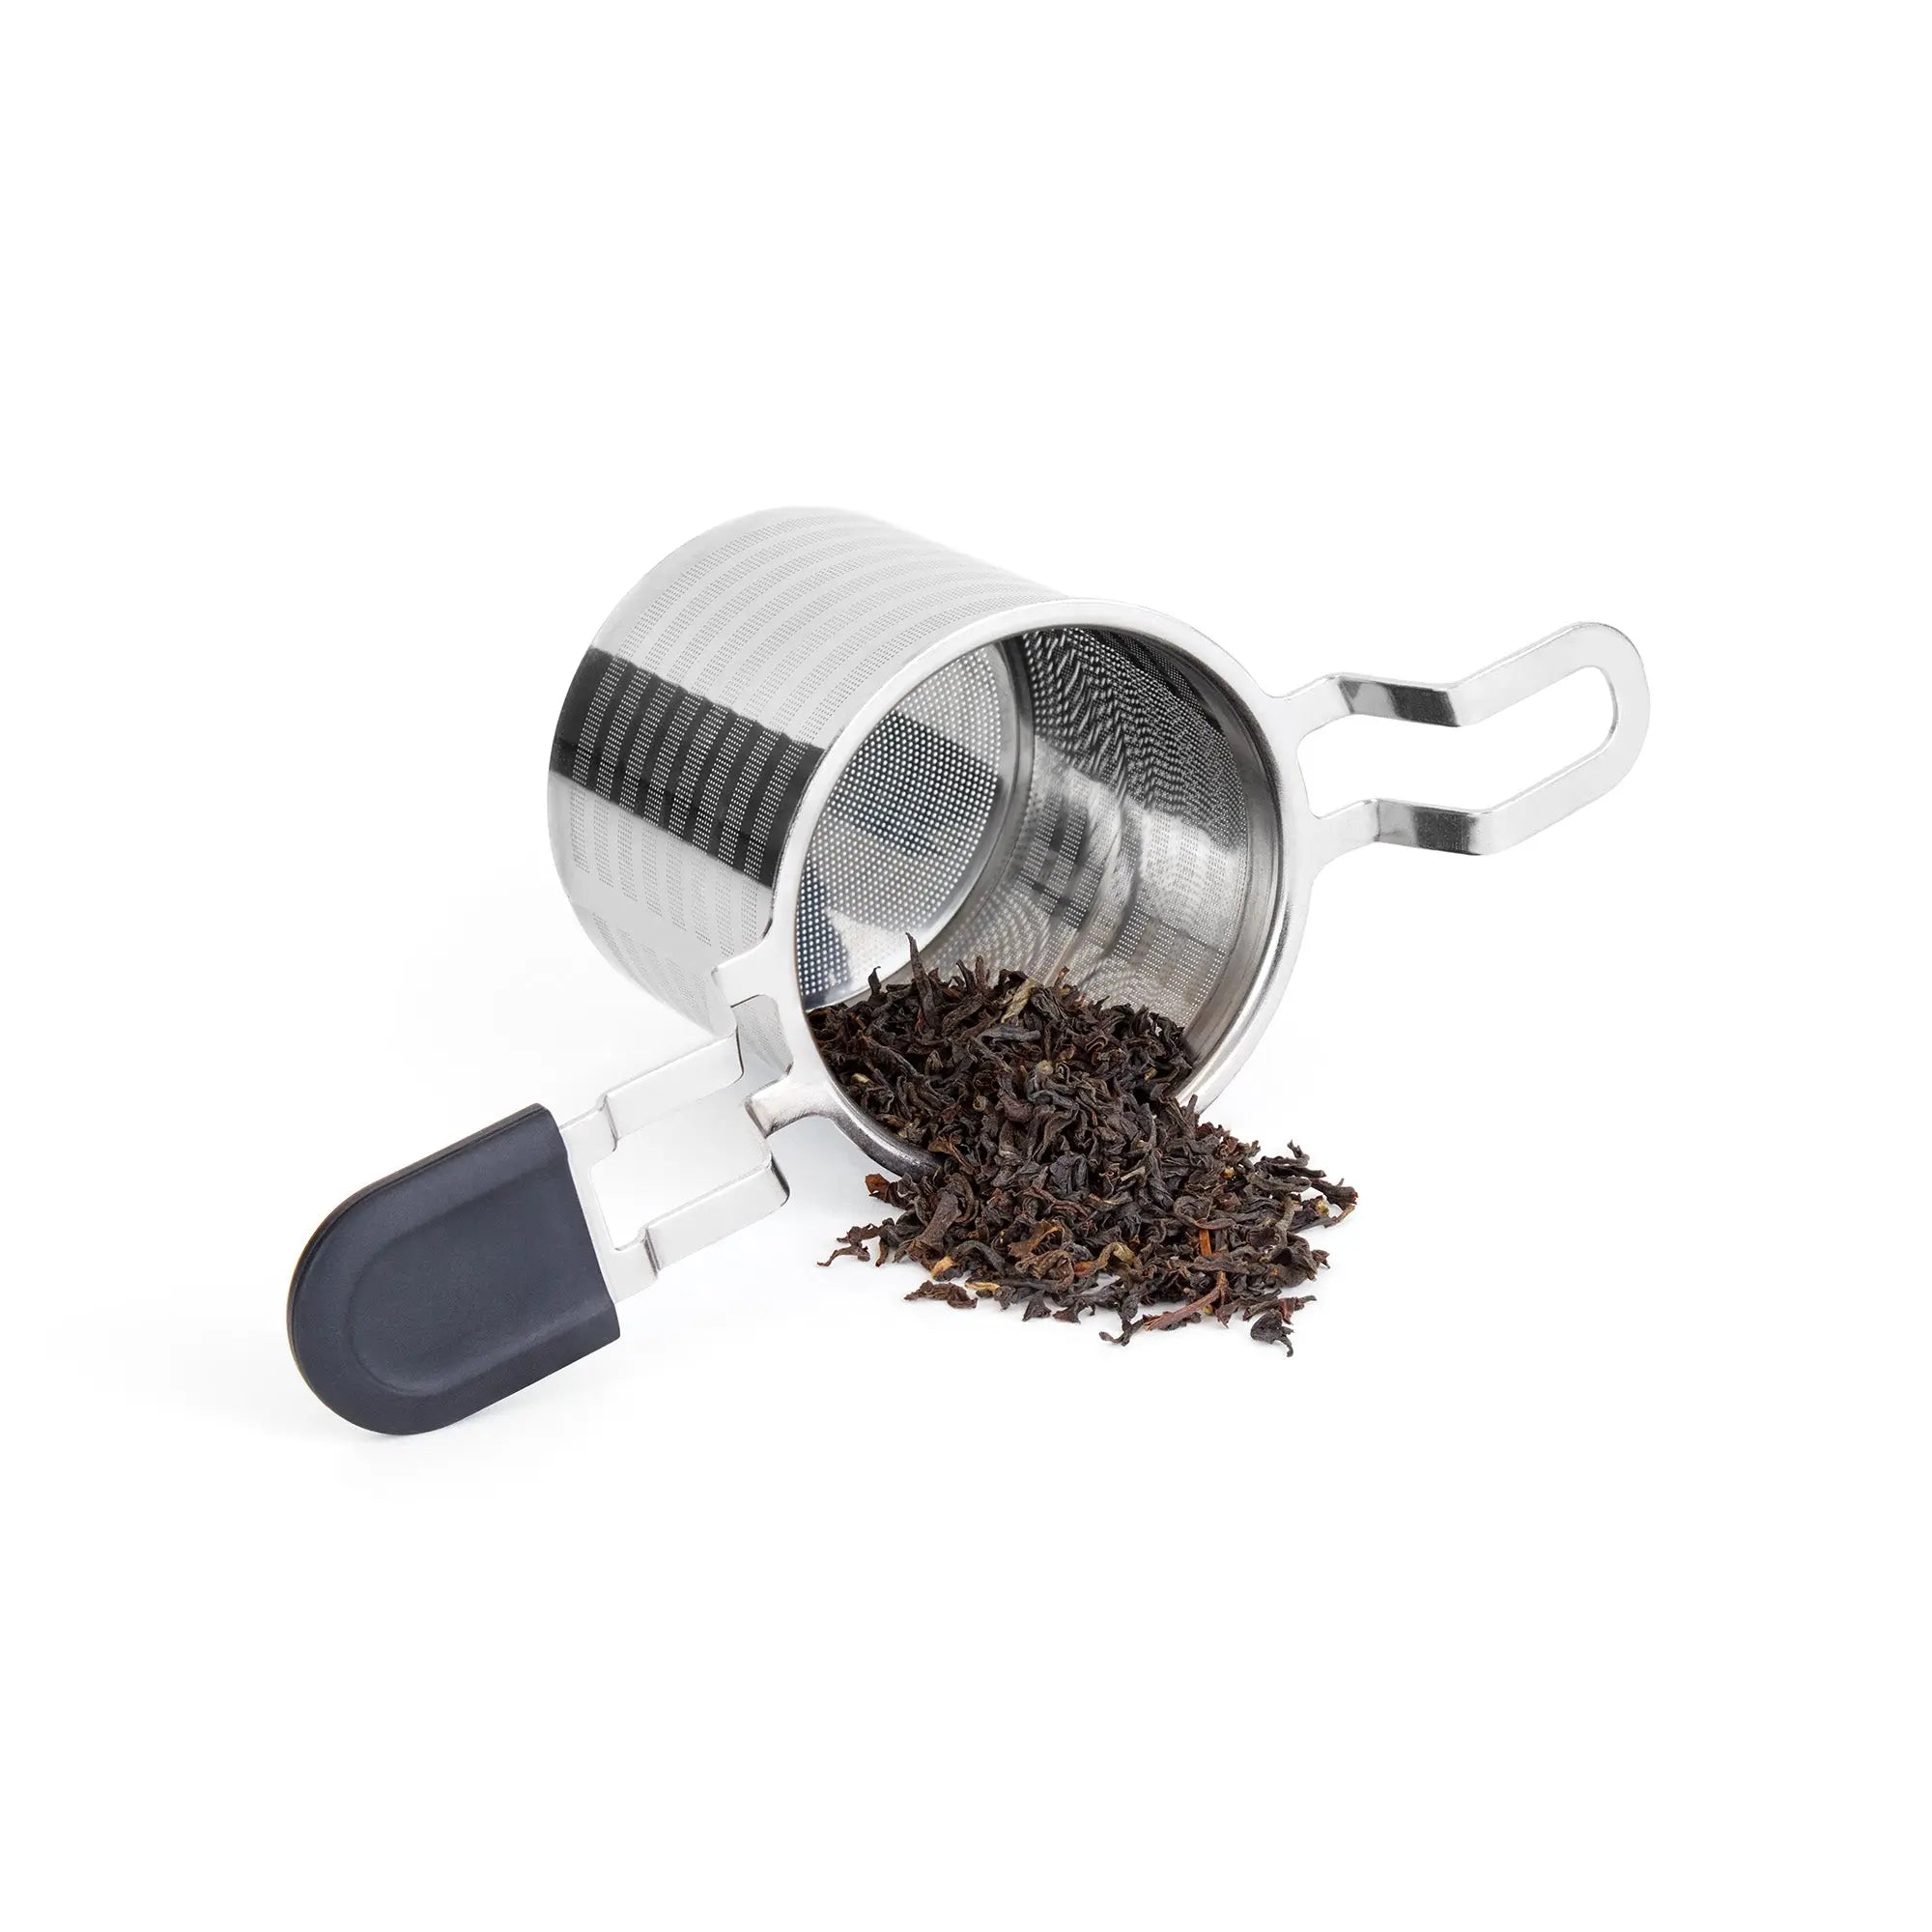 BIO - Black tea Assam from India - BRU